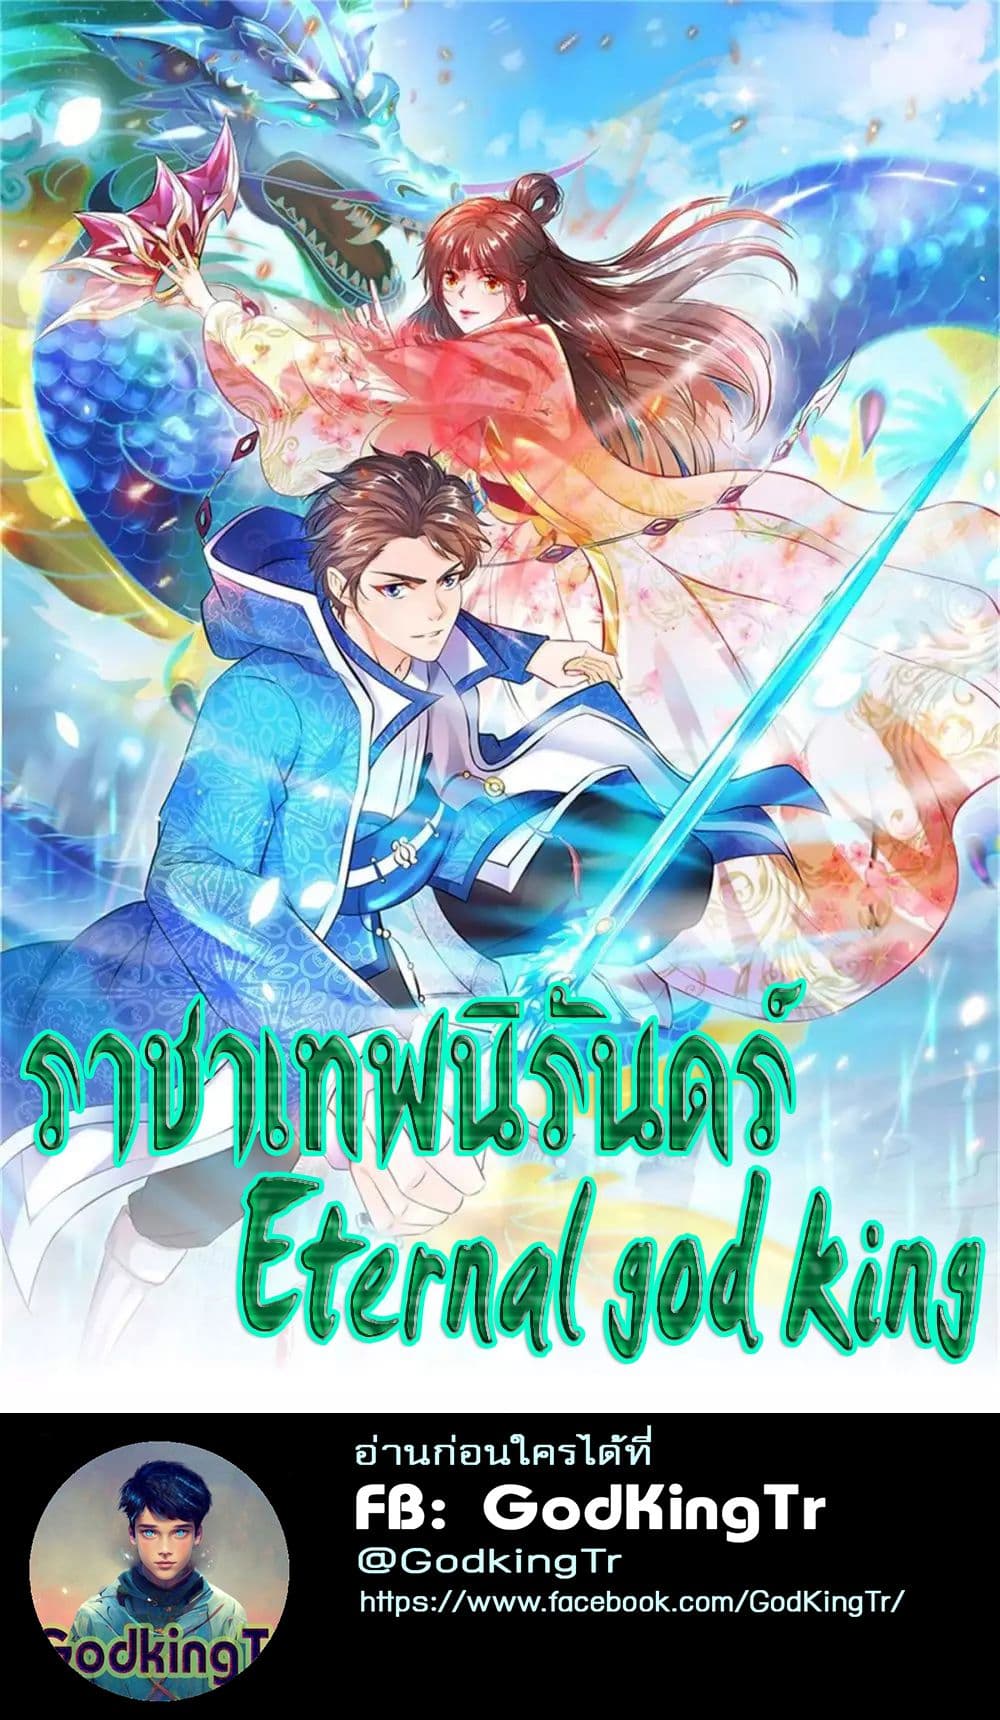 Eternal god King 30 01